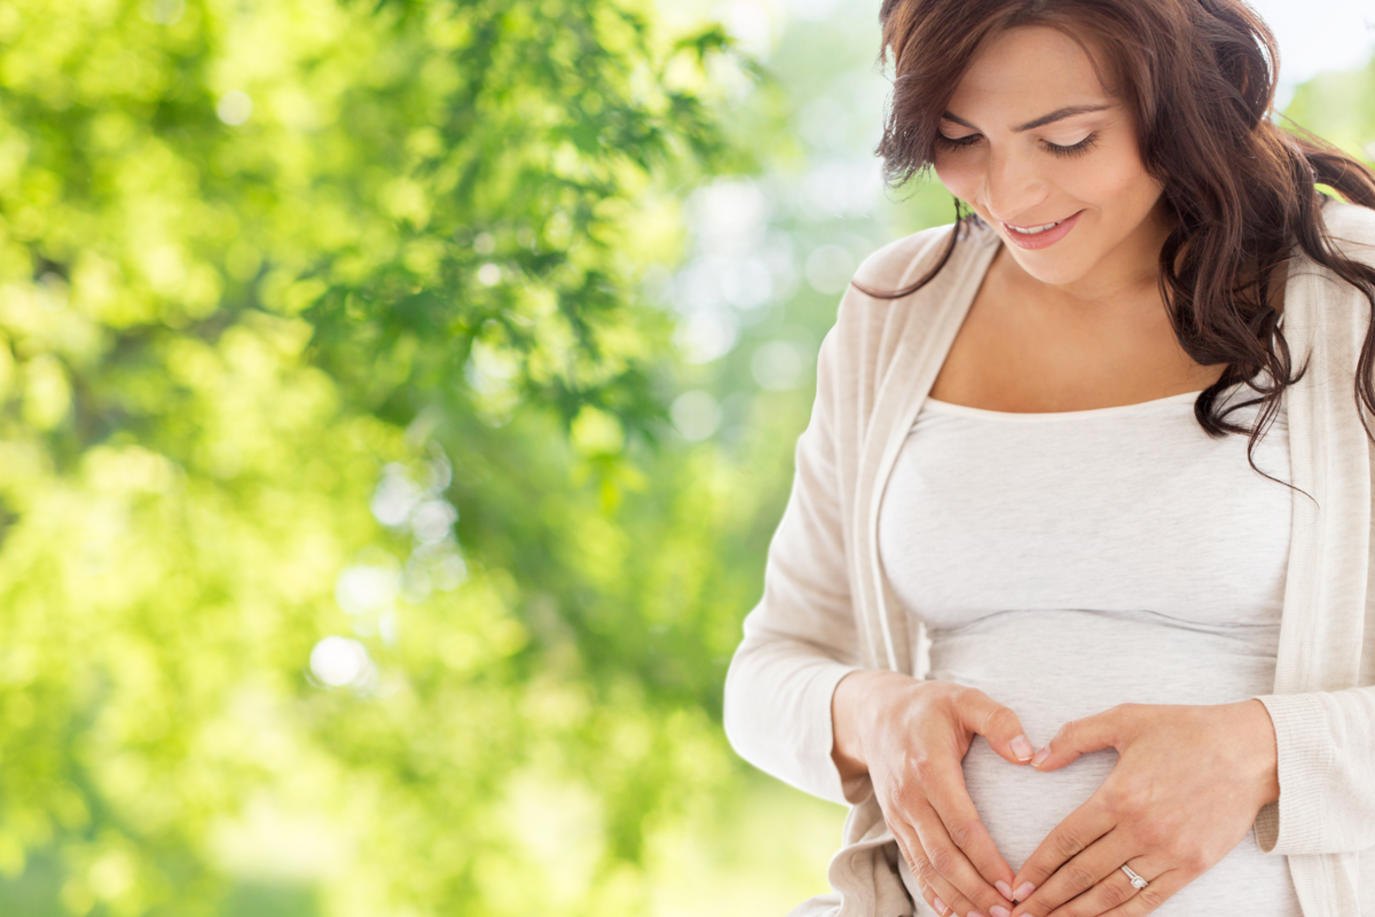 نصائح المرأة الحامل لتحافظ علي صحتها وصحة الجنين